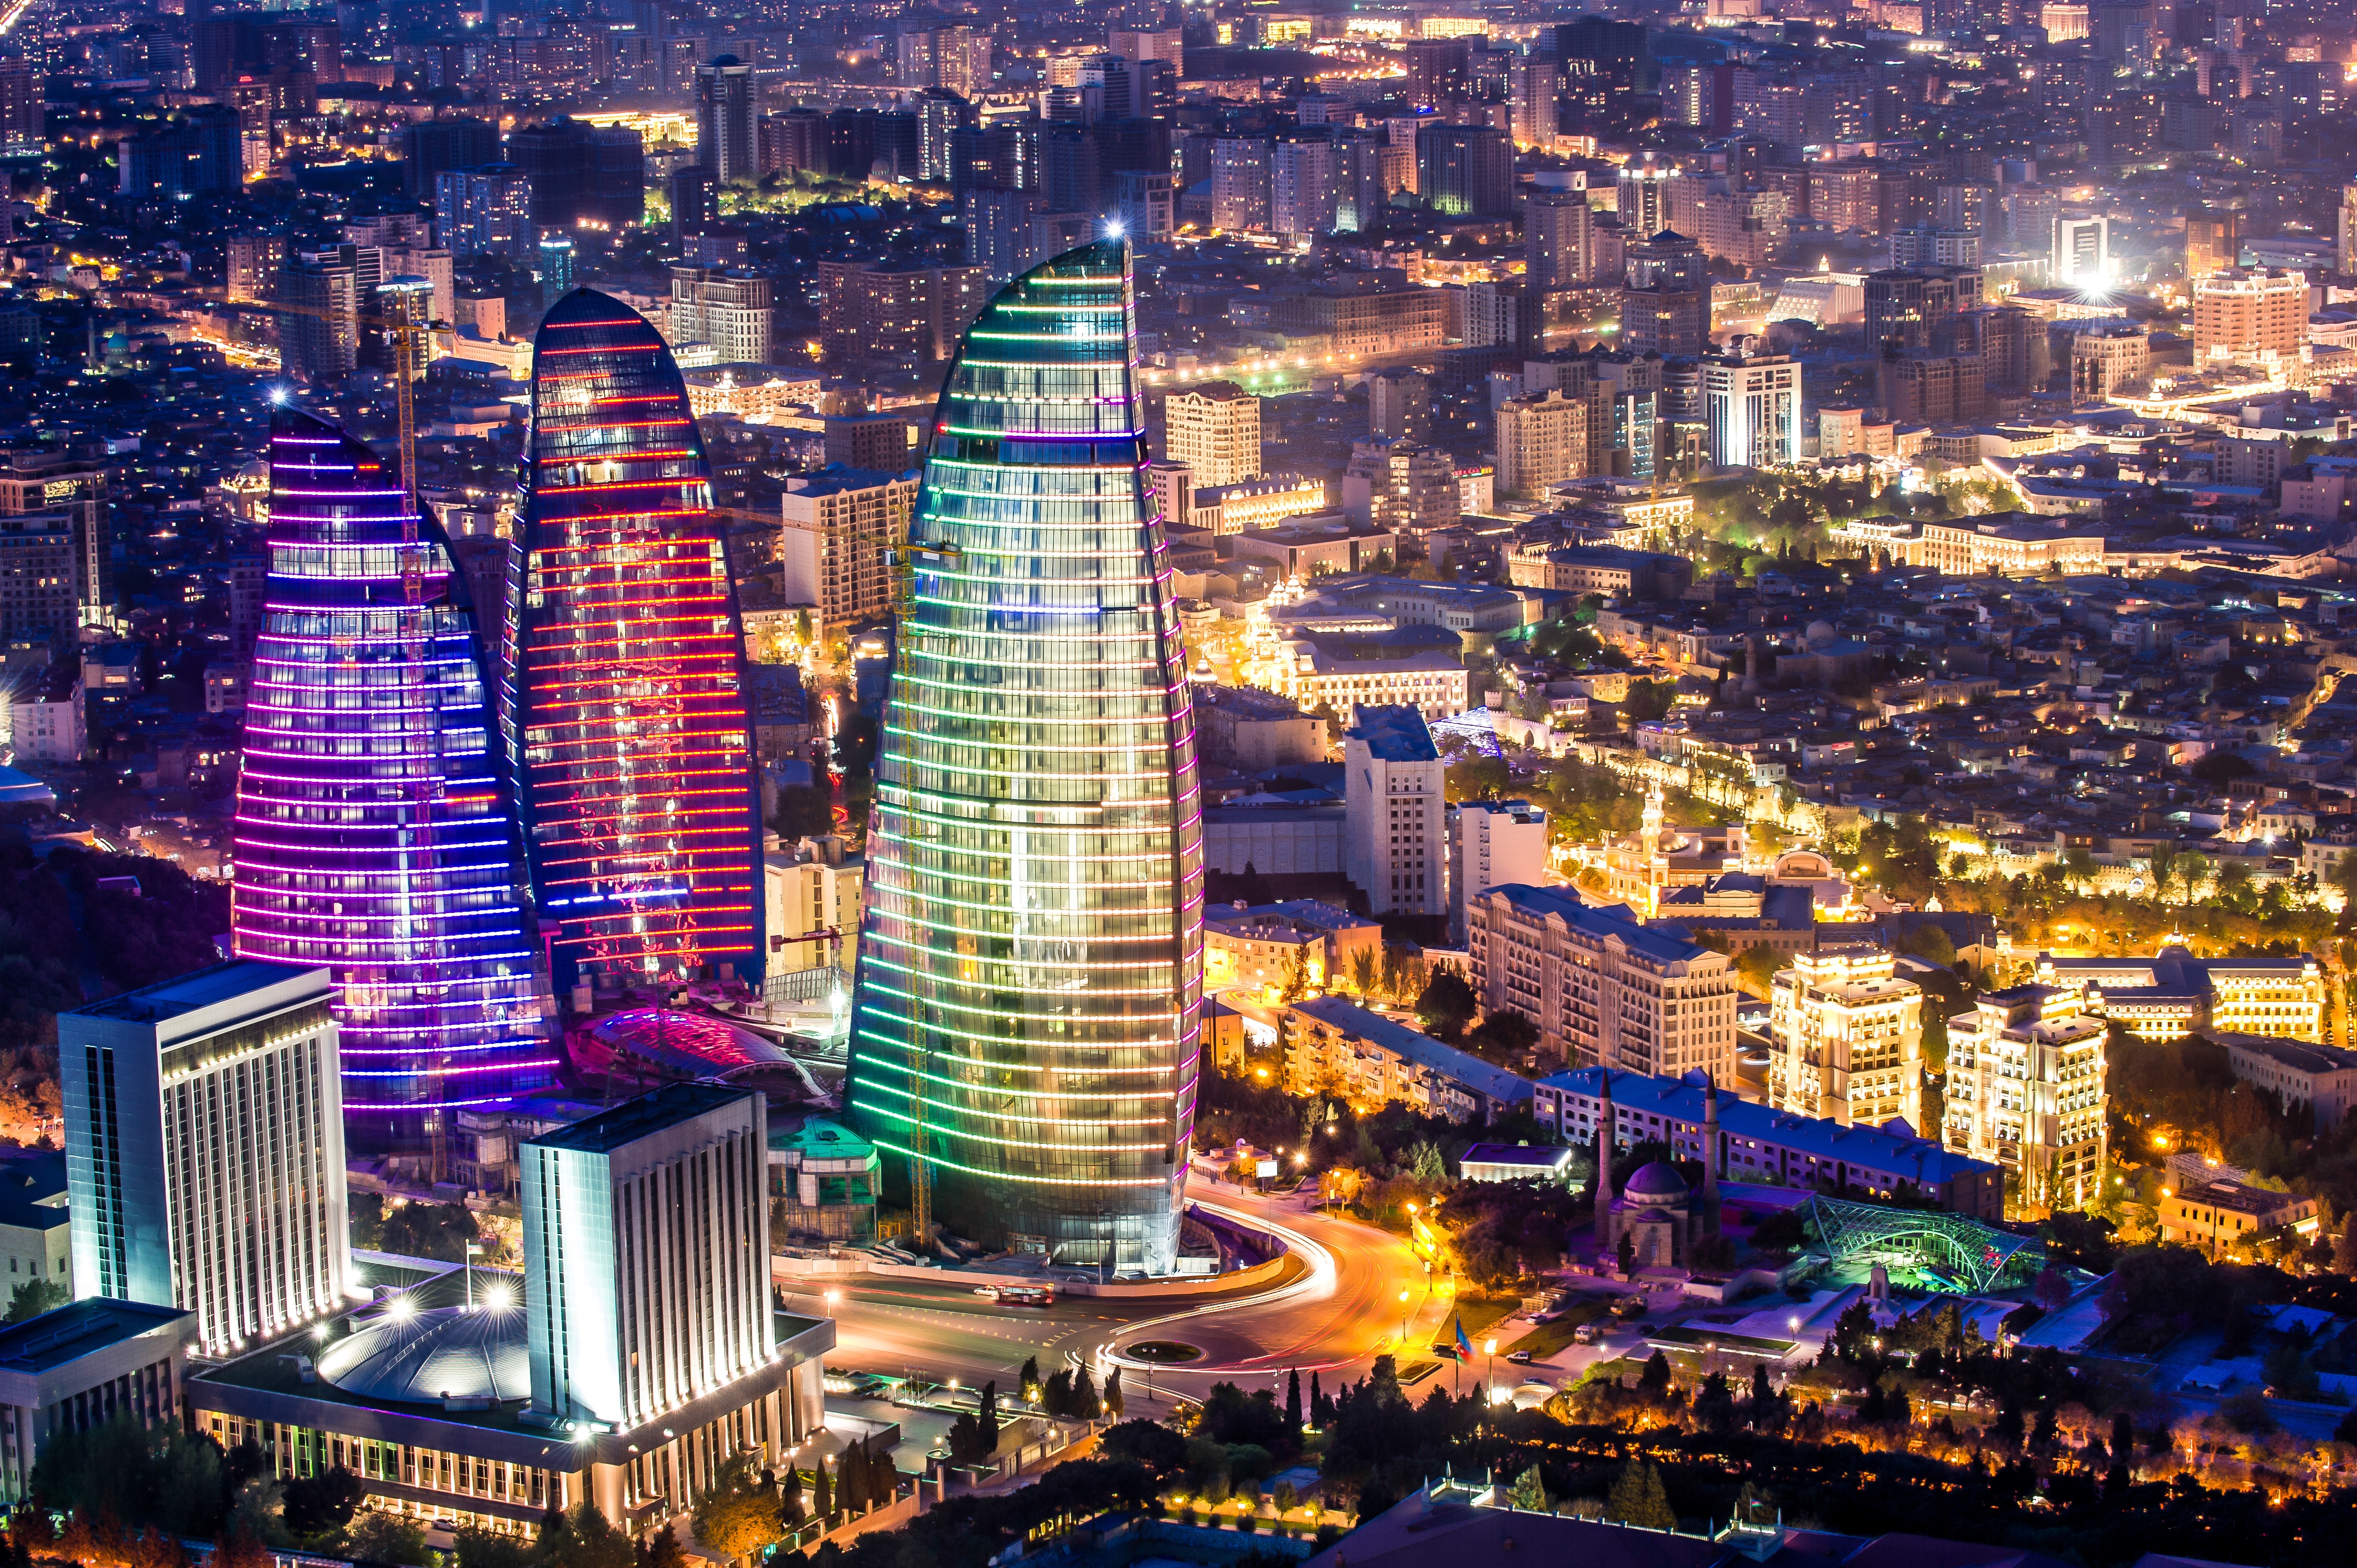 Скачать обои Азербайджан на телефон бесплатно